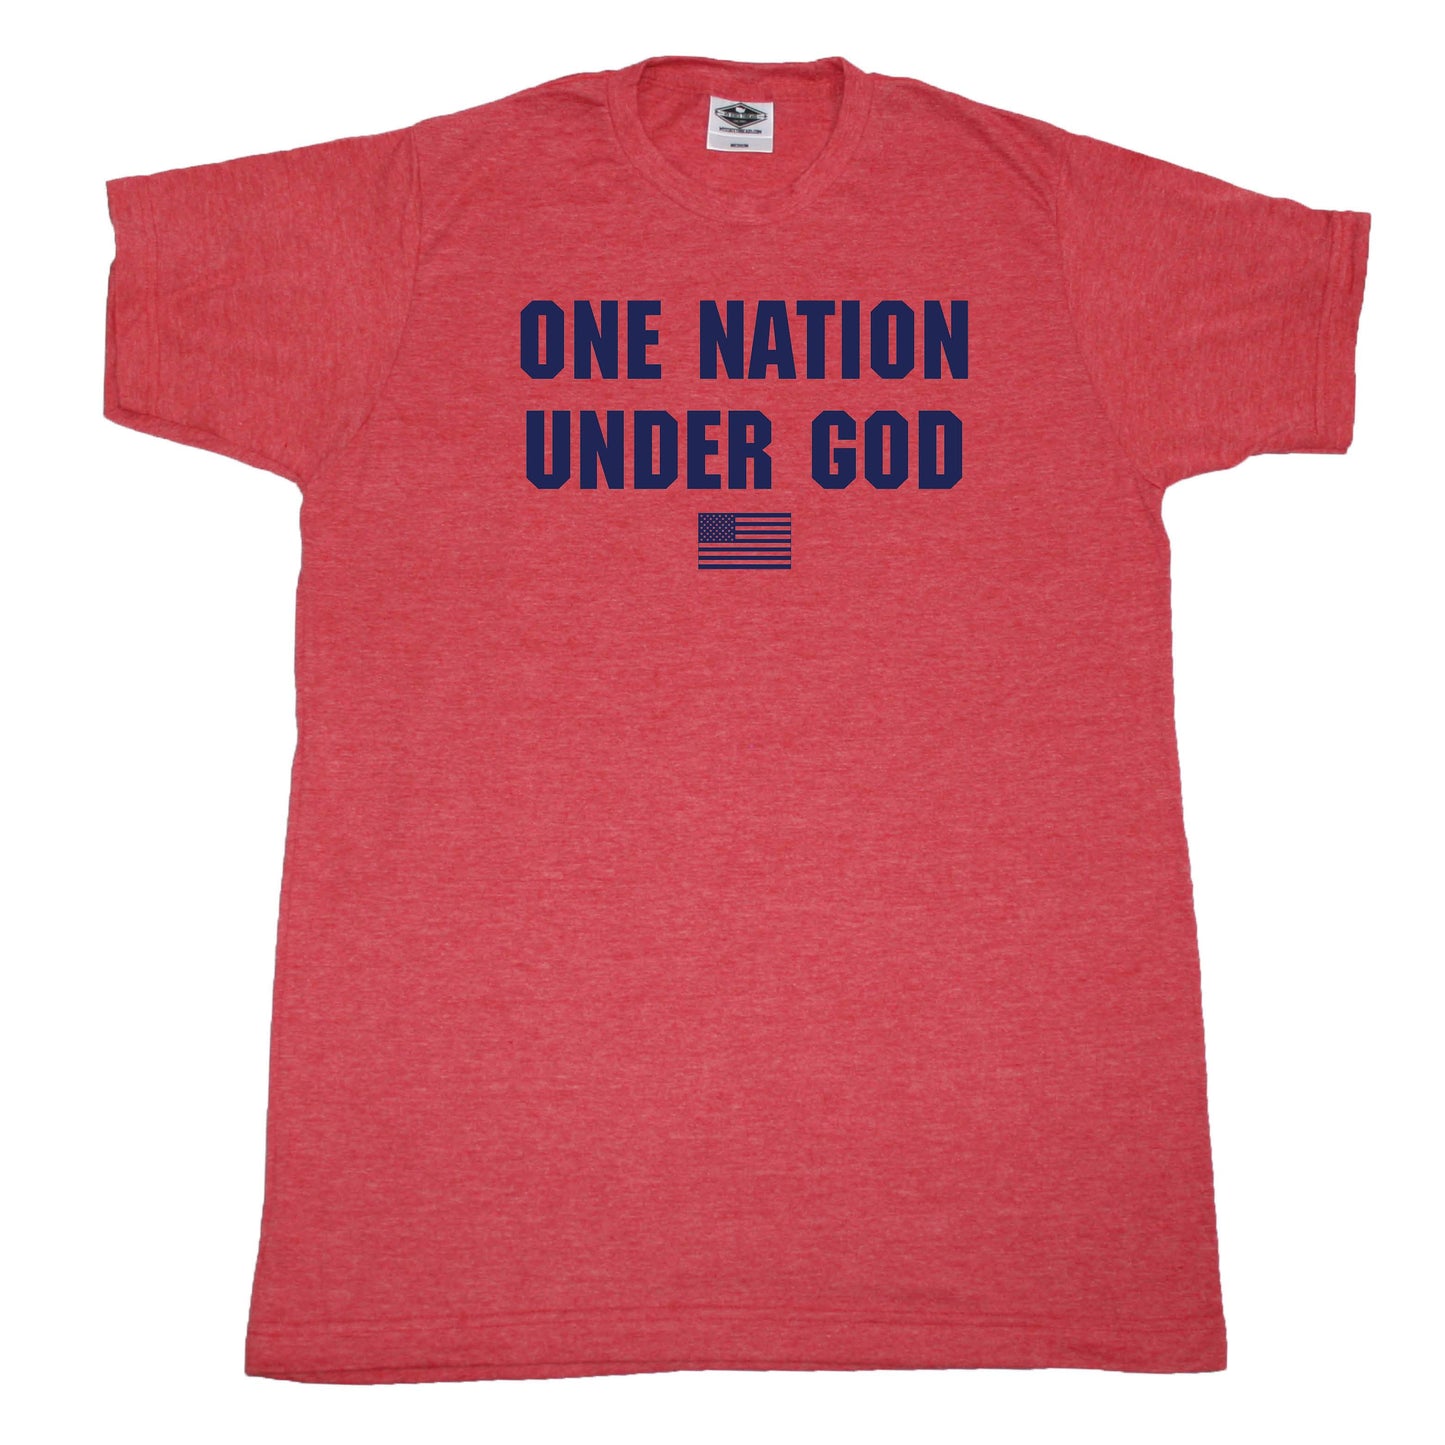 One Nation Under God - Unisex Tee